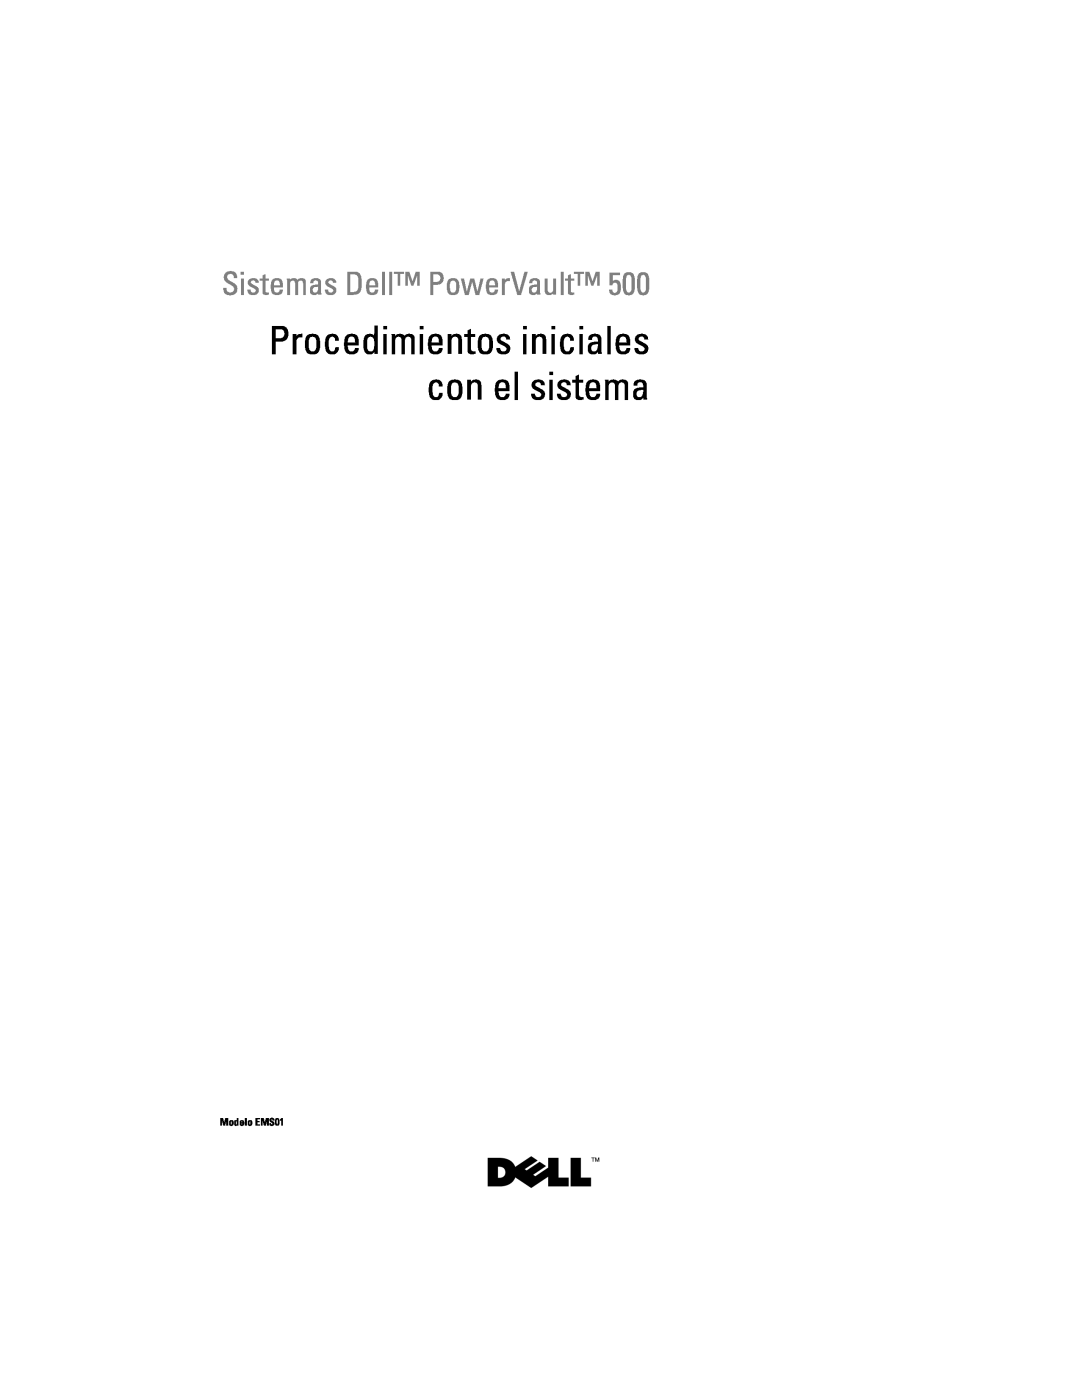 Dell YX154 manual Procedimientos iniciales con el sistema, Sistemas Dell PowerVault, Modelo EMS01 